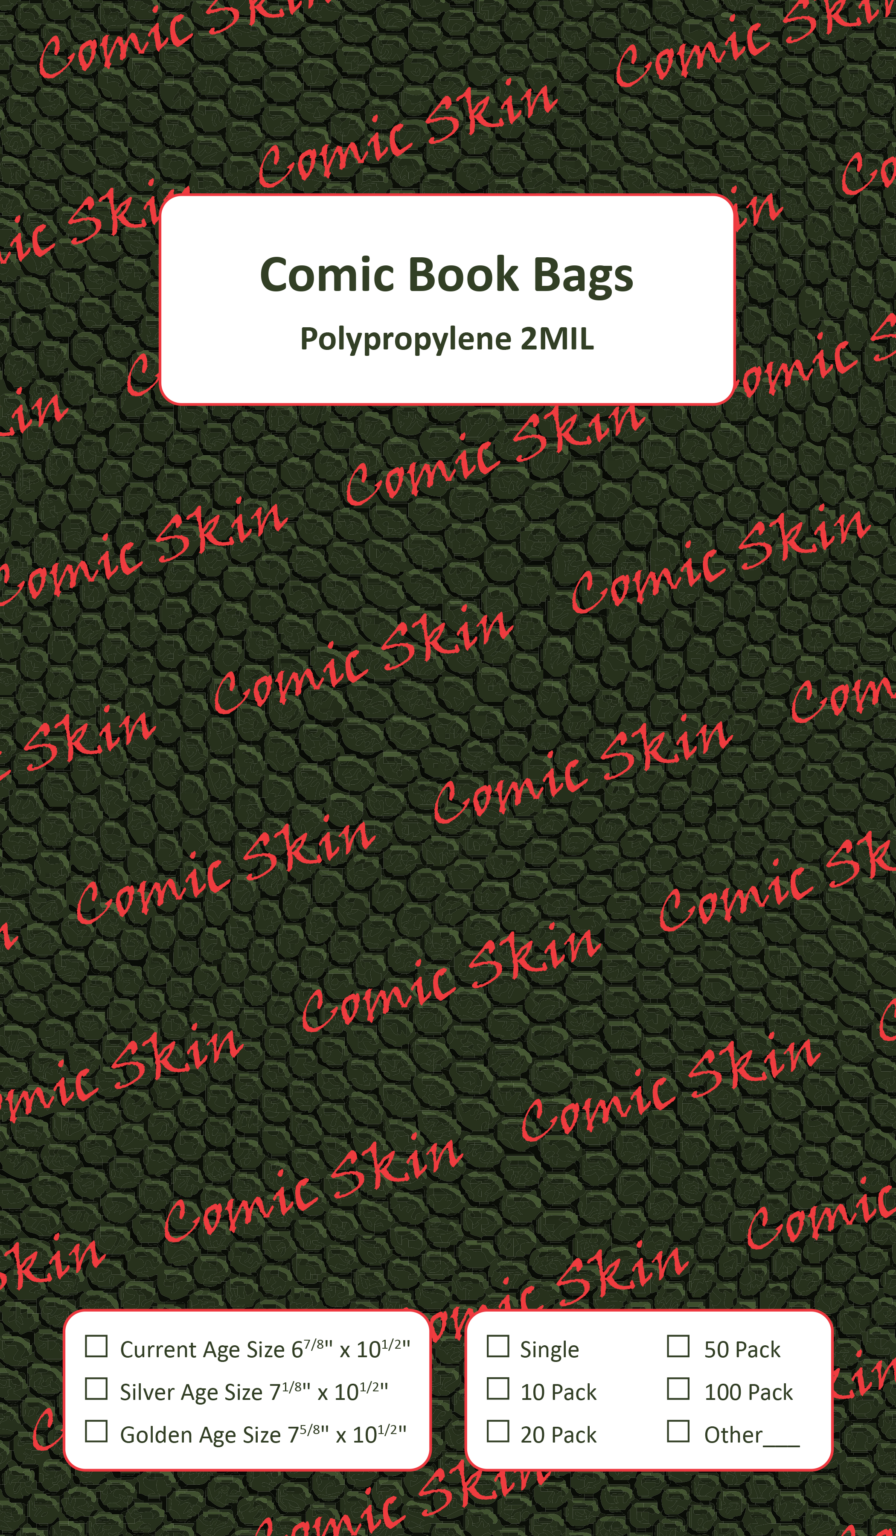 polypropylene-comic-book-bags-2mil-100-count-comicskin